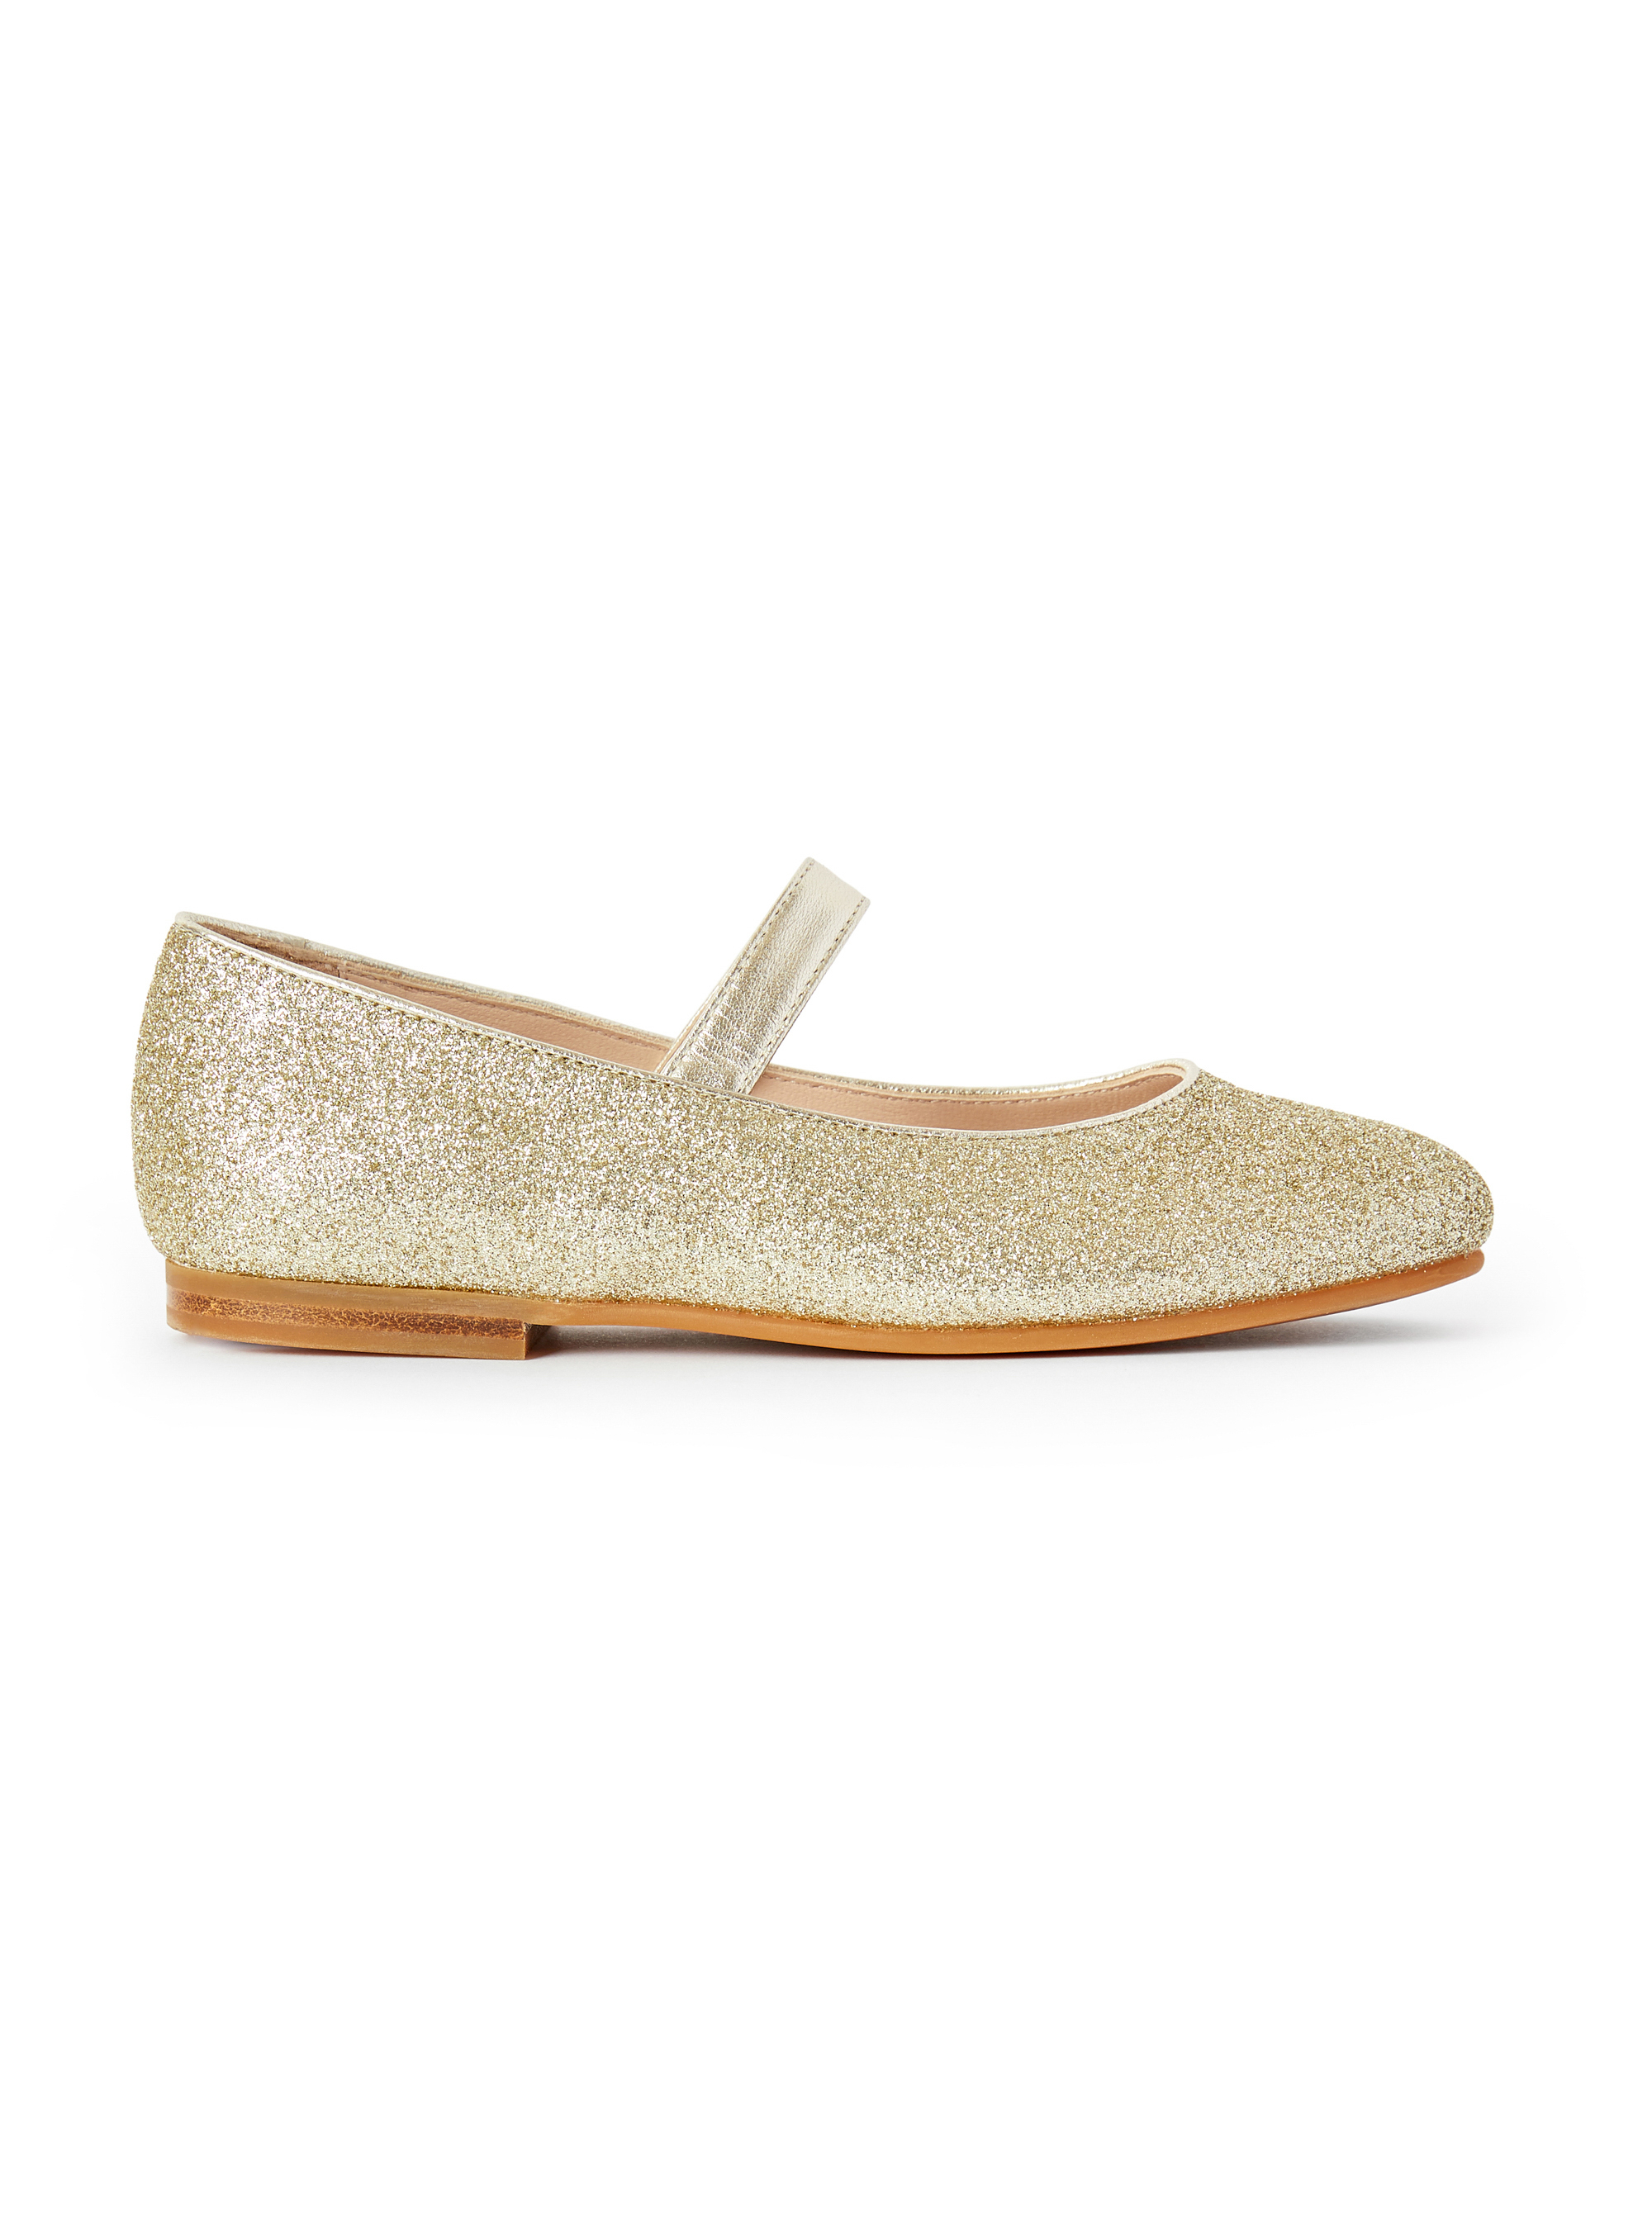 Chaussures plates avec paillettes dorées - Jaune | Il Gufo